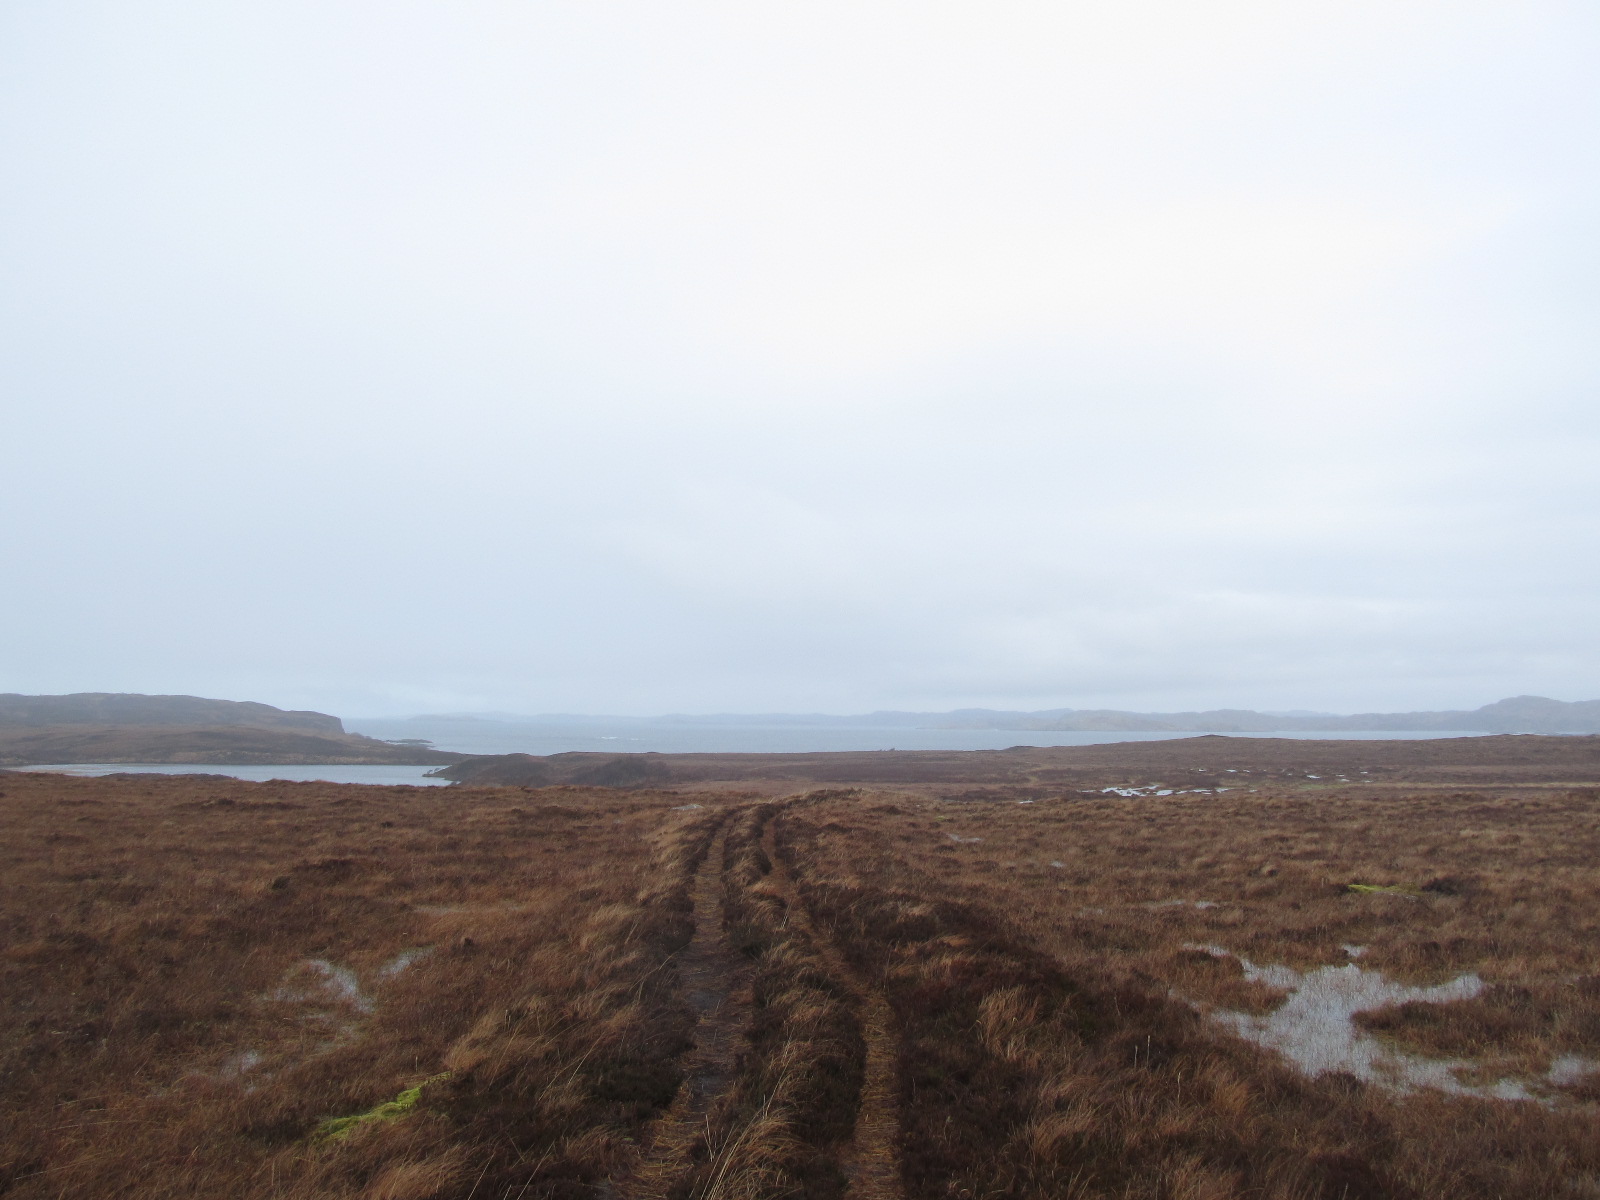 Achnahaird heathlands with Loch Garvie Bay beyond